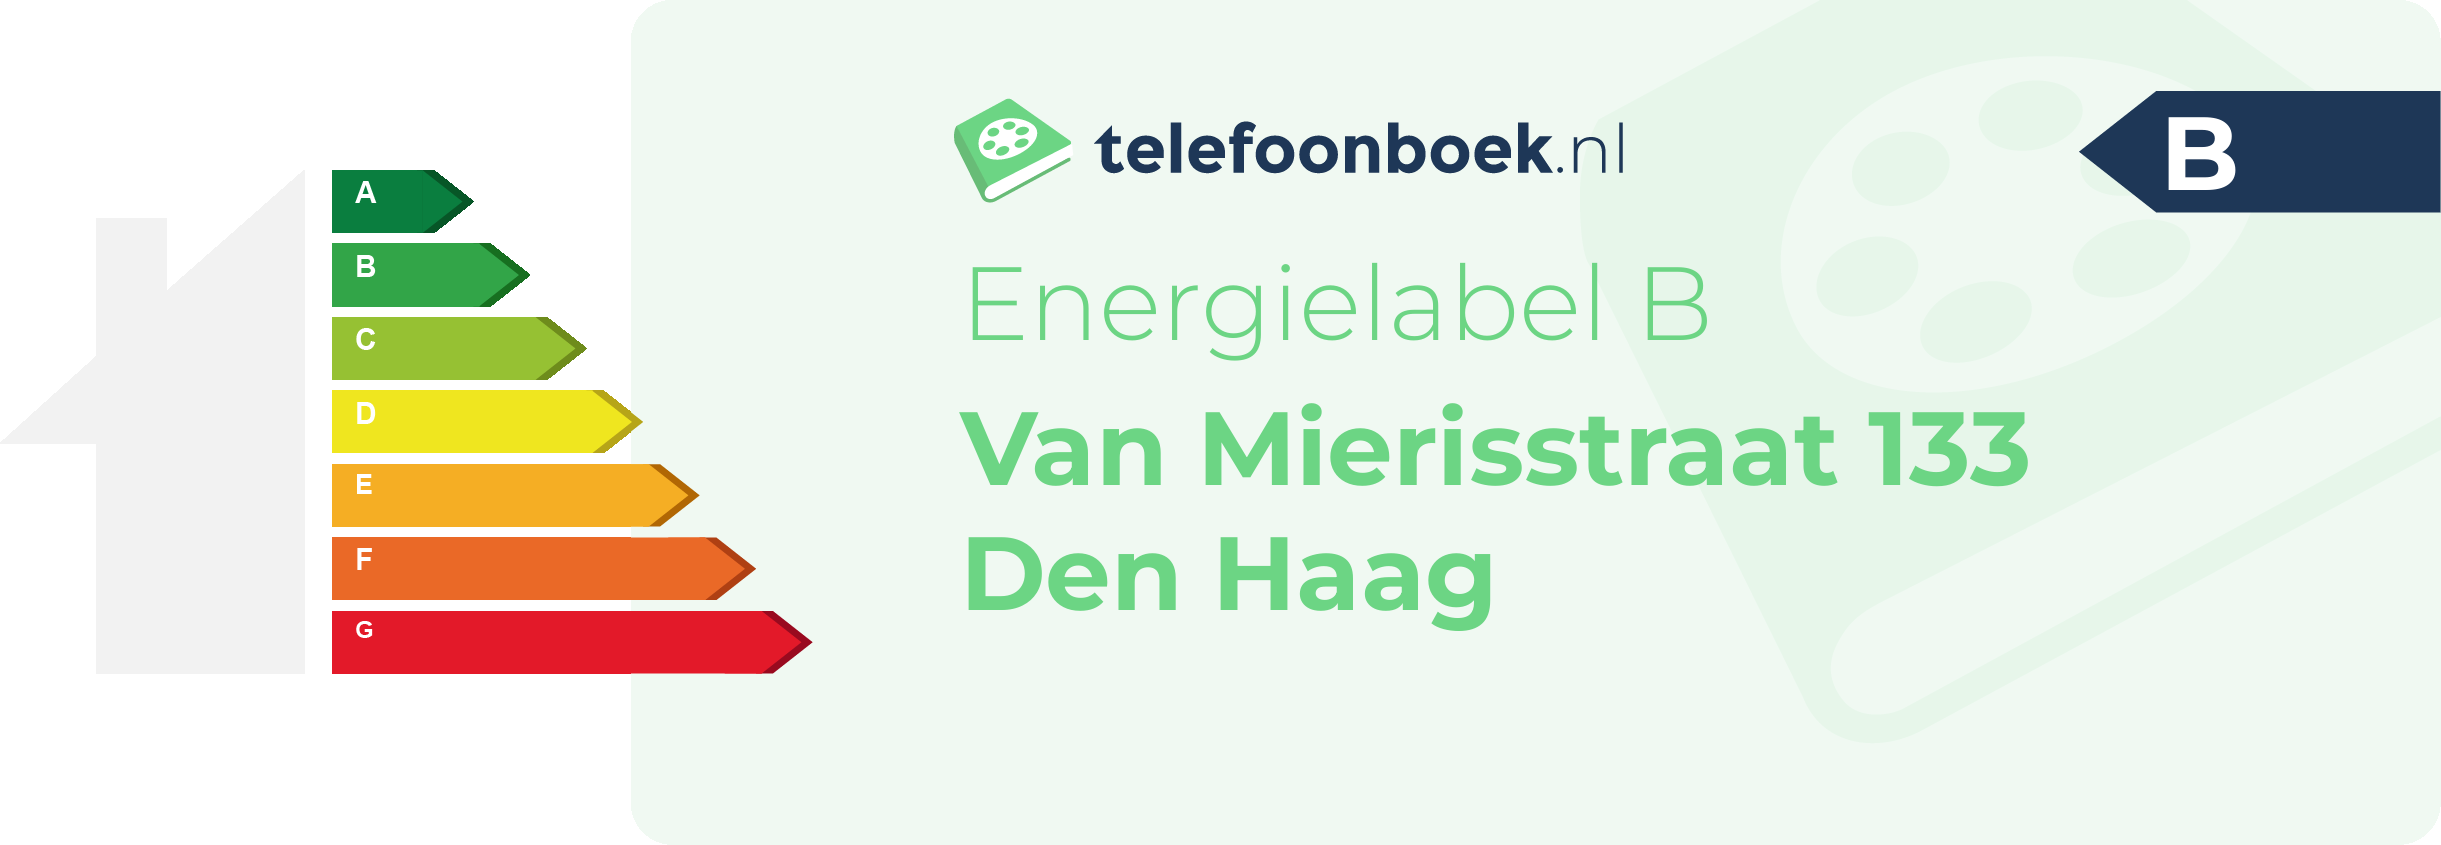 Energielabel Van Mierisstraat 133 Den Haag